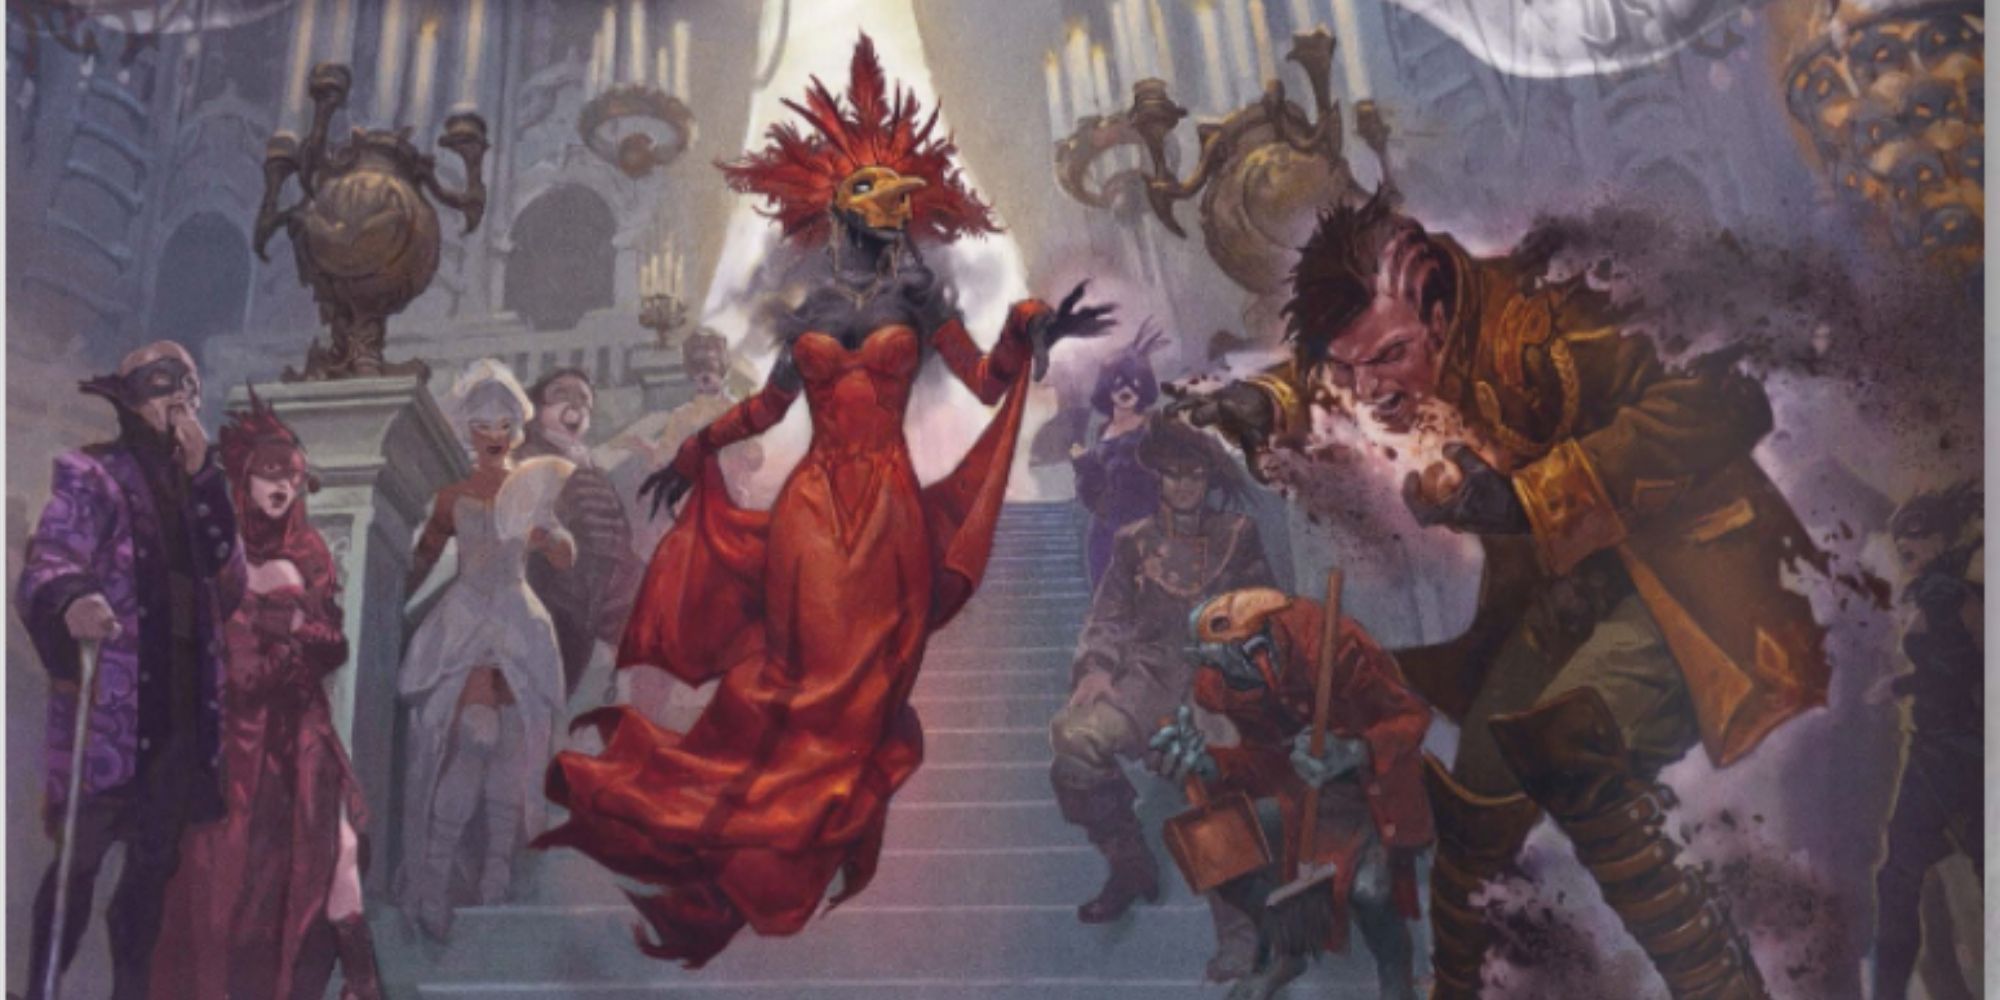 D&D Van Richten's Guide To Ravenloft - Dark Lord Duchess D'Honaire crumbling a guest at the Masquerade 